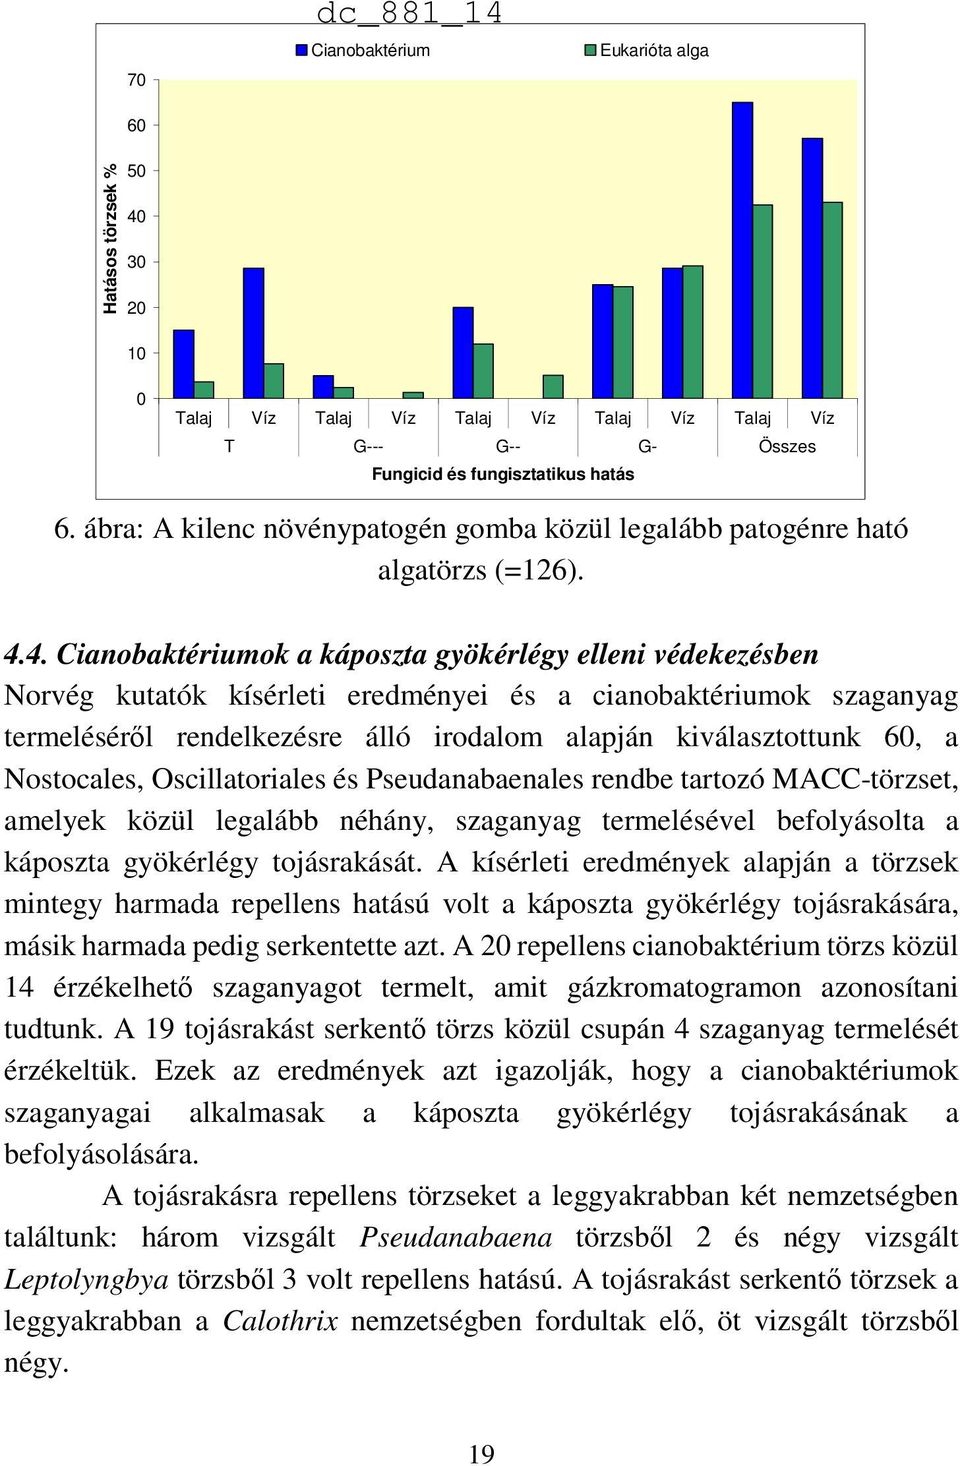 4. Cianobaktériumok a káposzta gyökérlégy elleni védekezésben Norvég kutatók kísérleti eredményei és a cianobaktériumok szaganyag termeléséről rendelkezésre álló irodalom alapján kiválasztottunk 60,